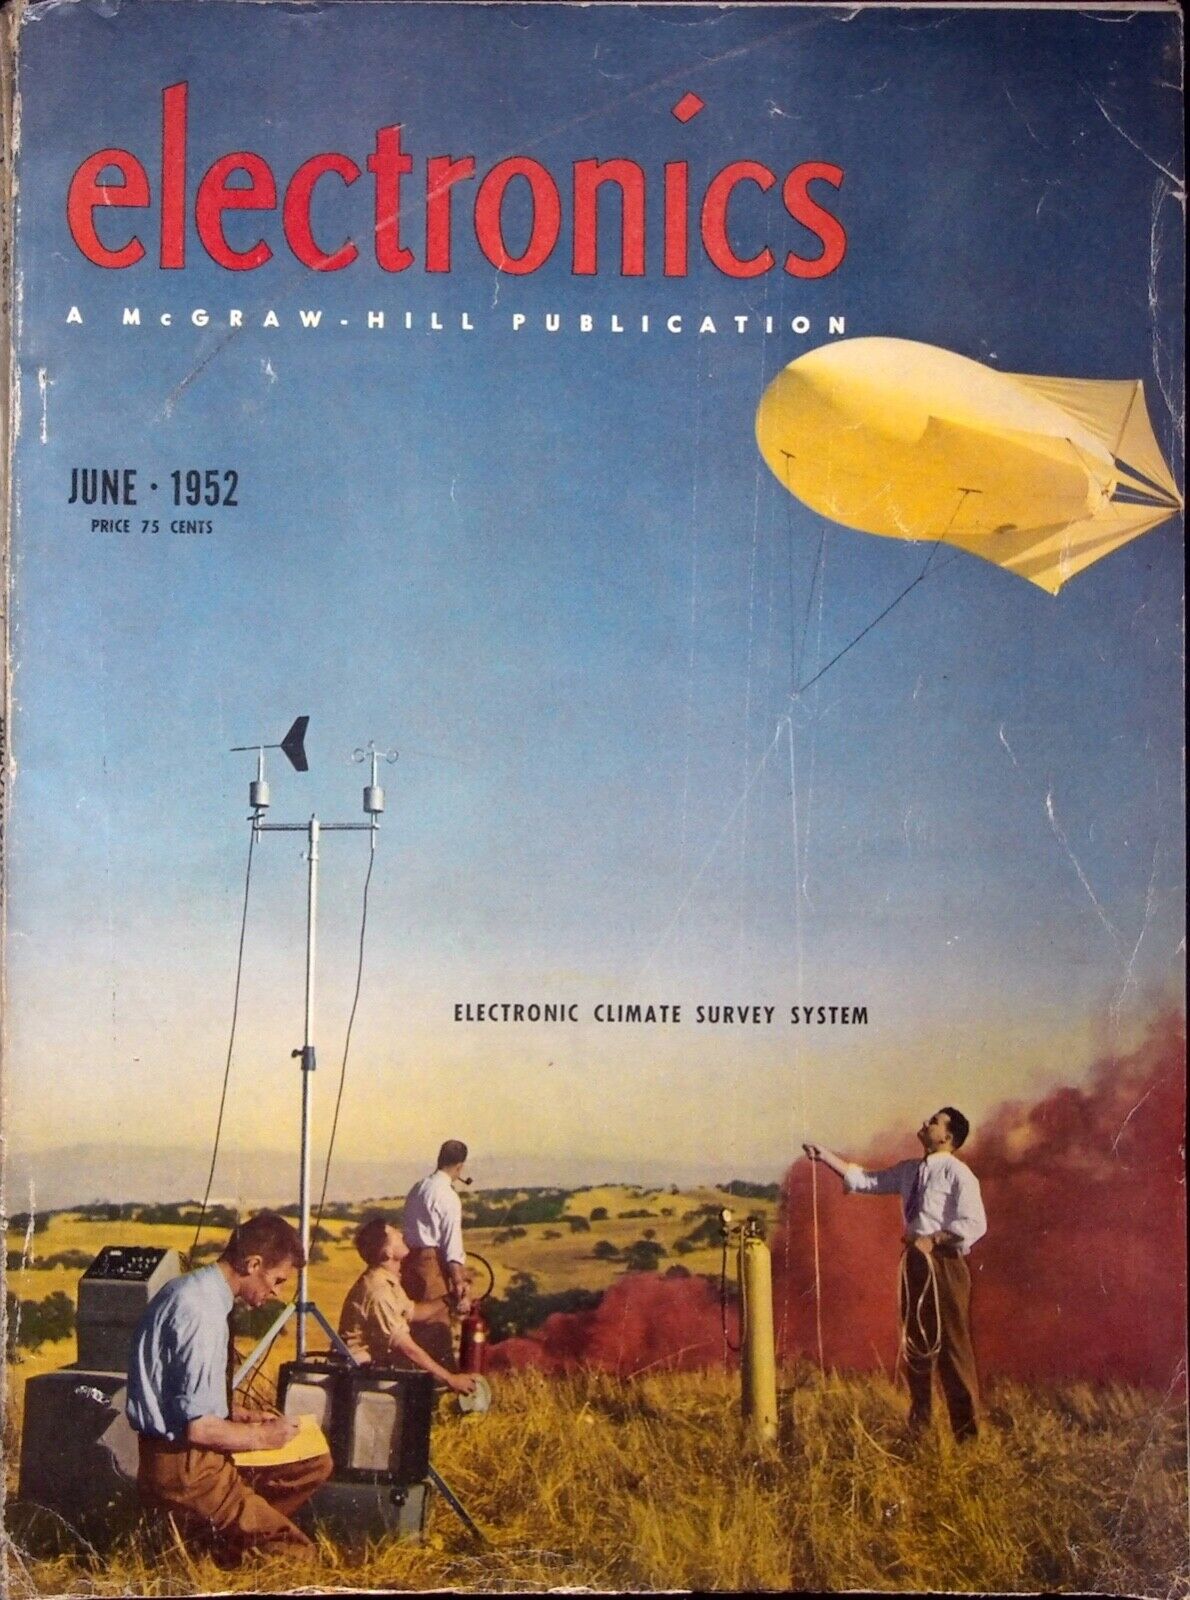 ELECTRONIC CLIMATE SURVEY SYSTEM - ELECTRONICS MAGAZINE, JUNE 1952